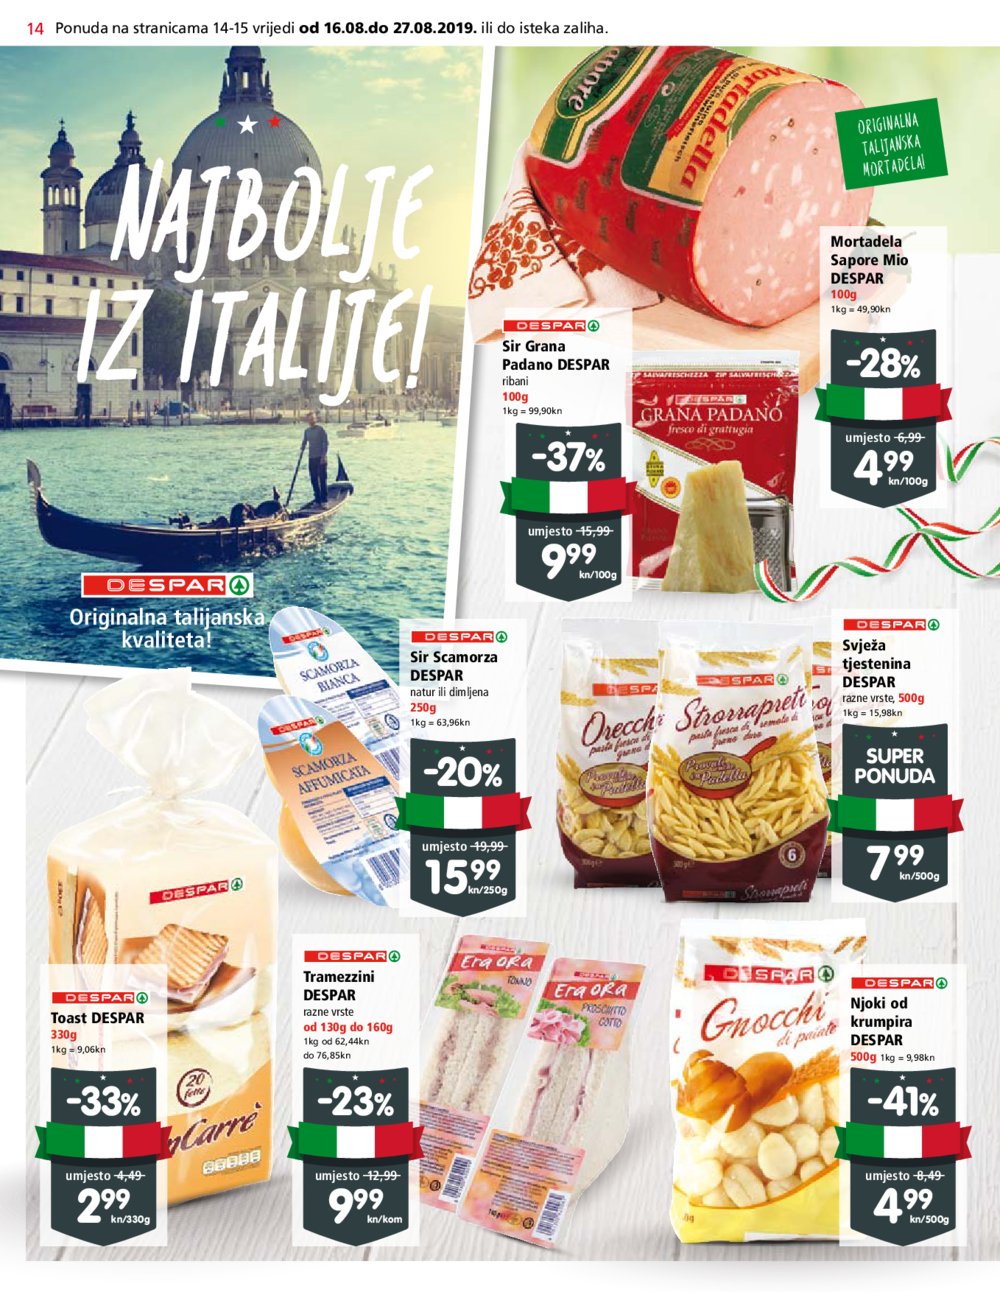 Spar katalog Akcija otvorenja Spar supermarketa Martinkovac Rijeka 16.08.-27.08.2019.